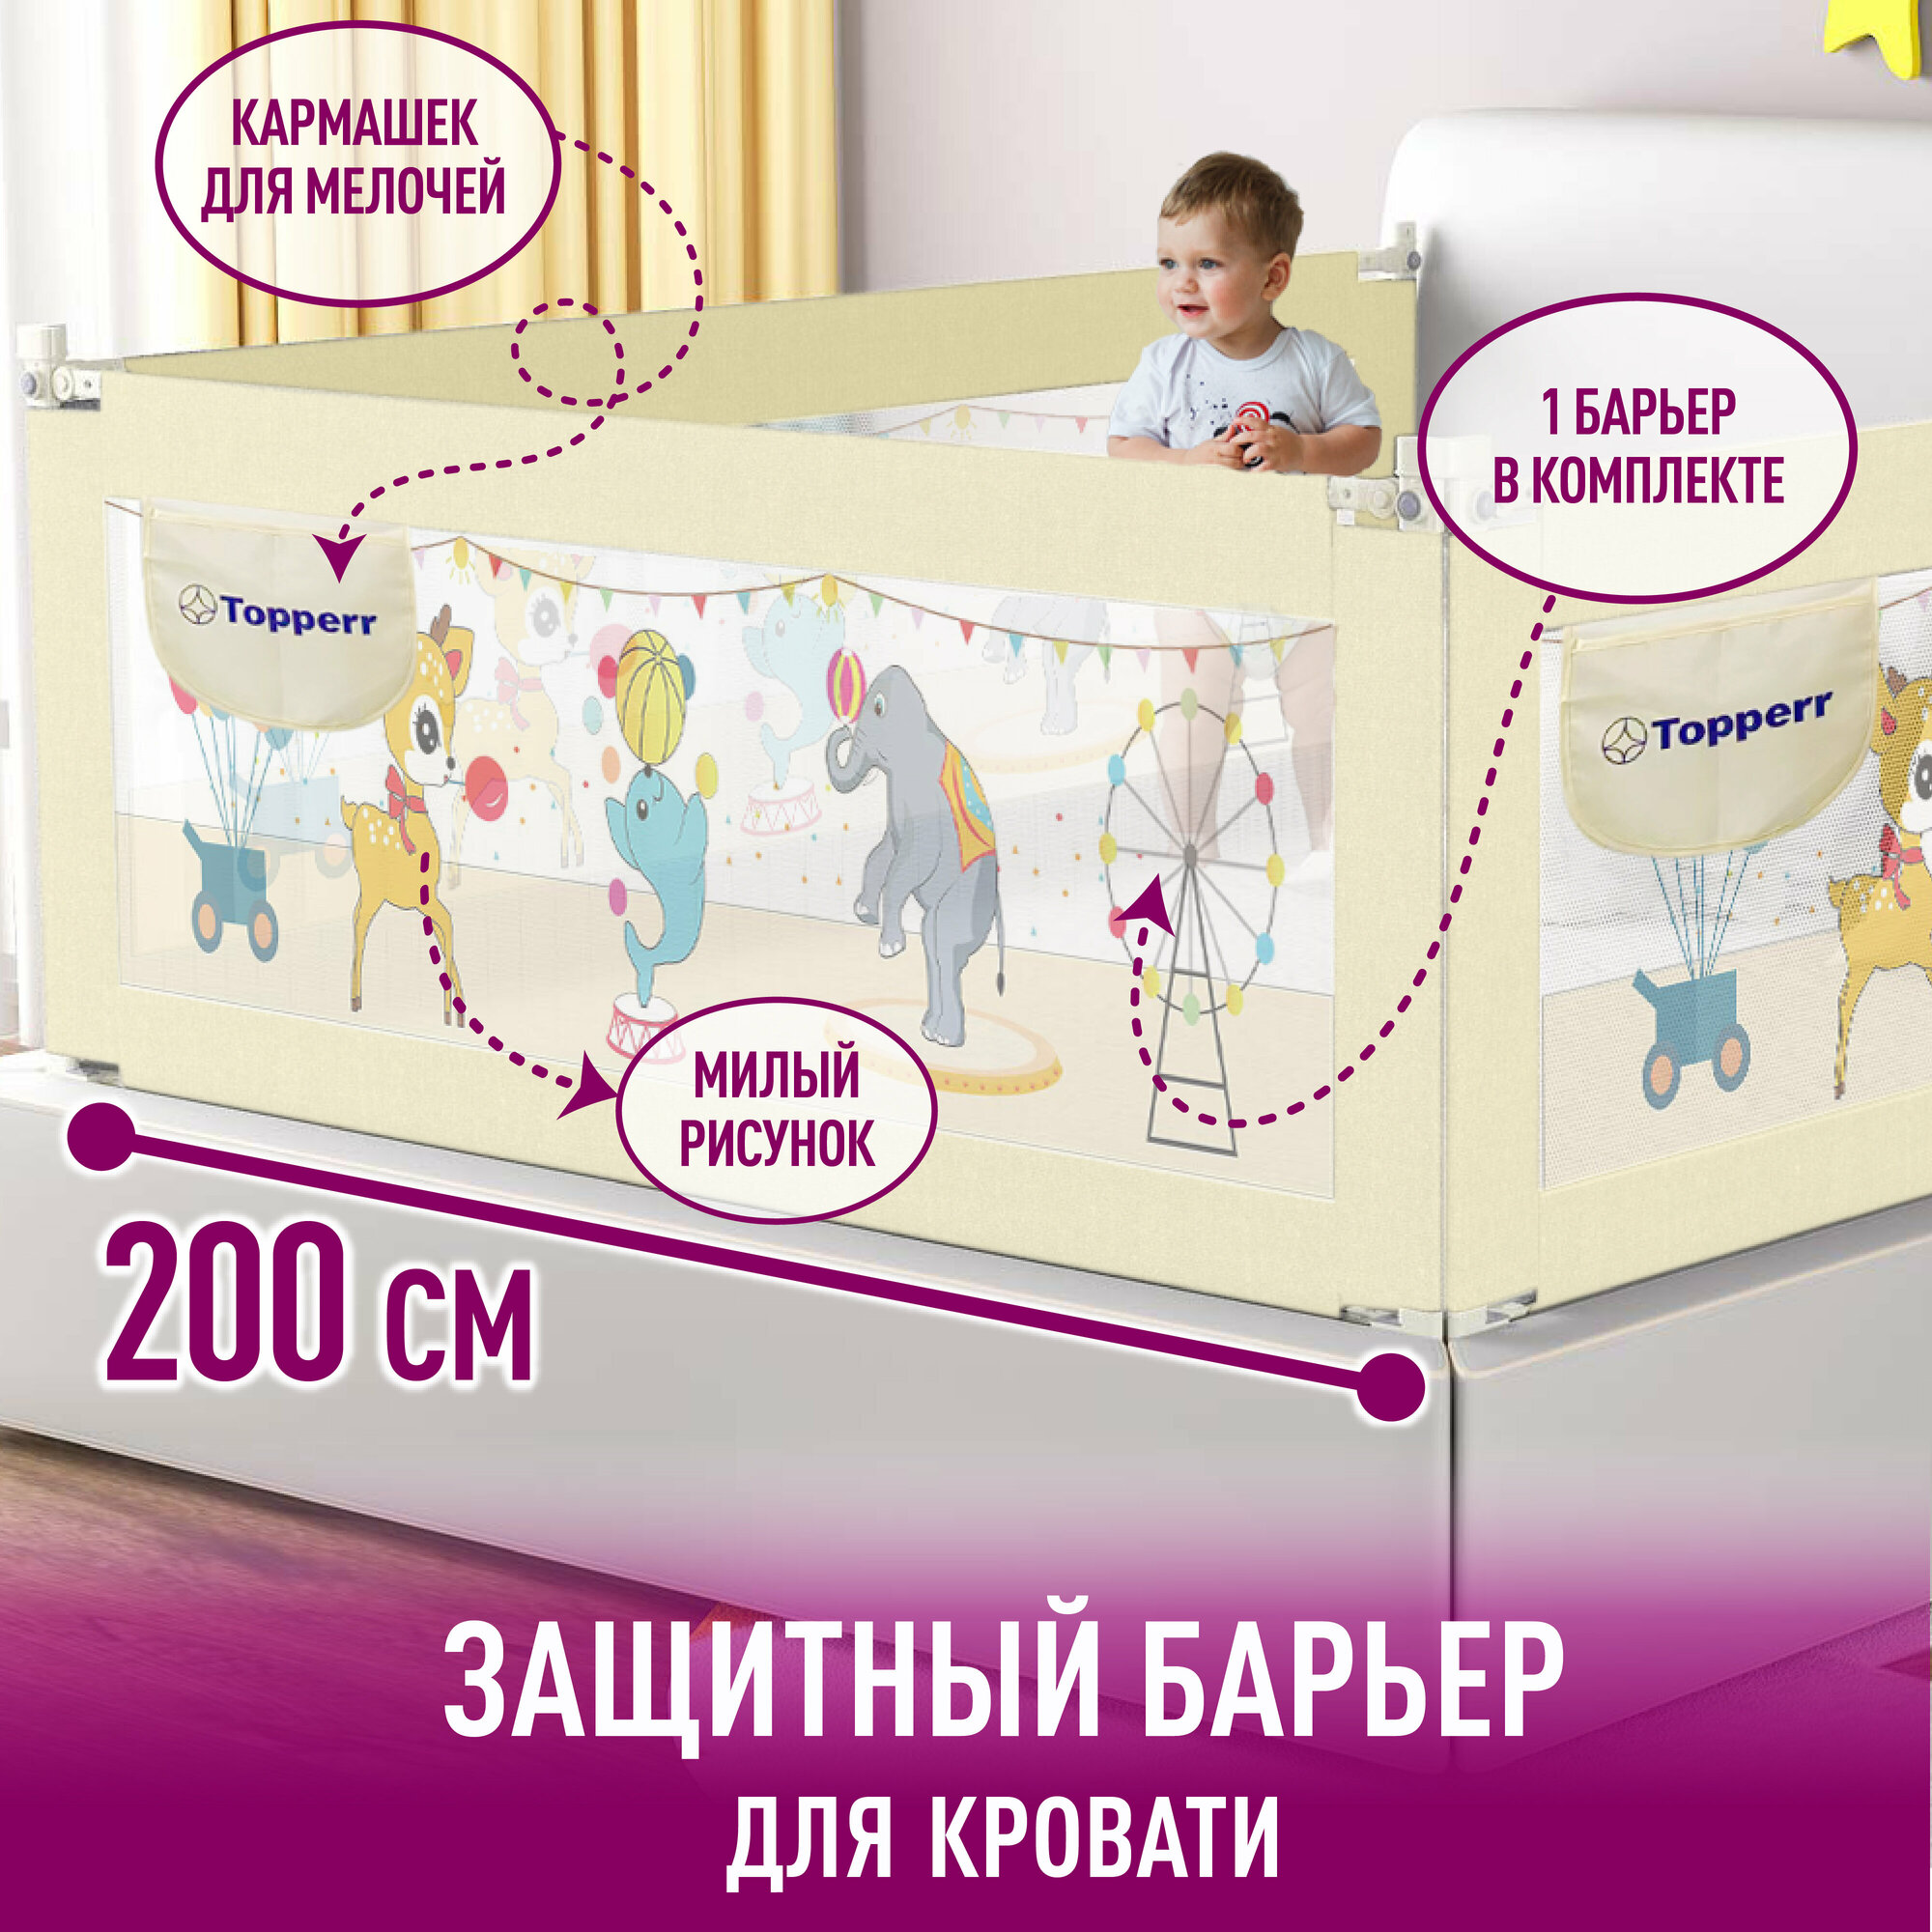 Защитный барьер детский для кровати TOPPERR